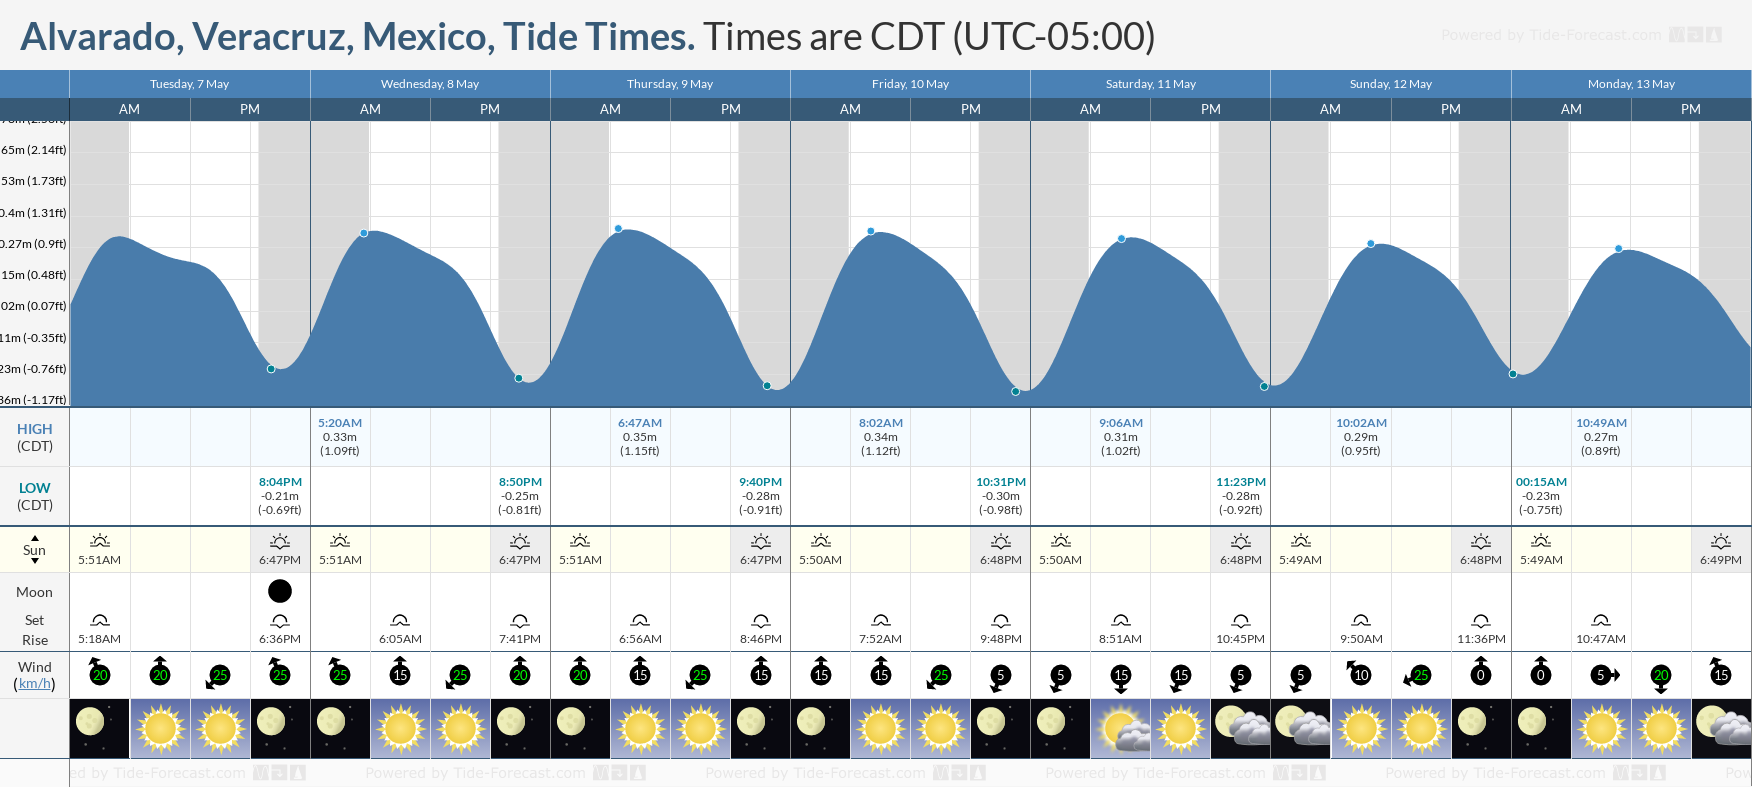 Alvarado, Veracruz, Mexico Tide Chart including high and low tide times for the next 7 days